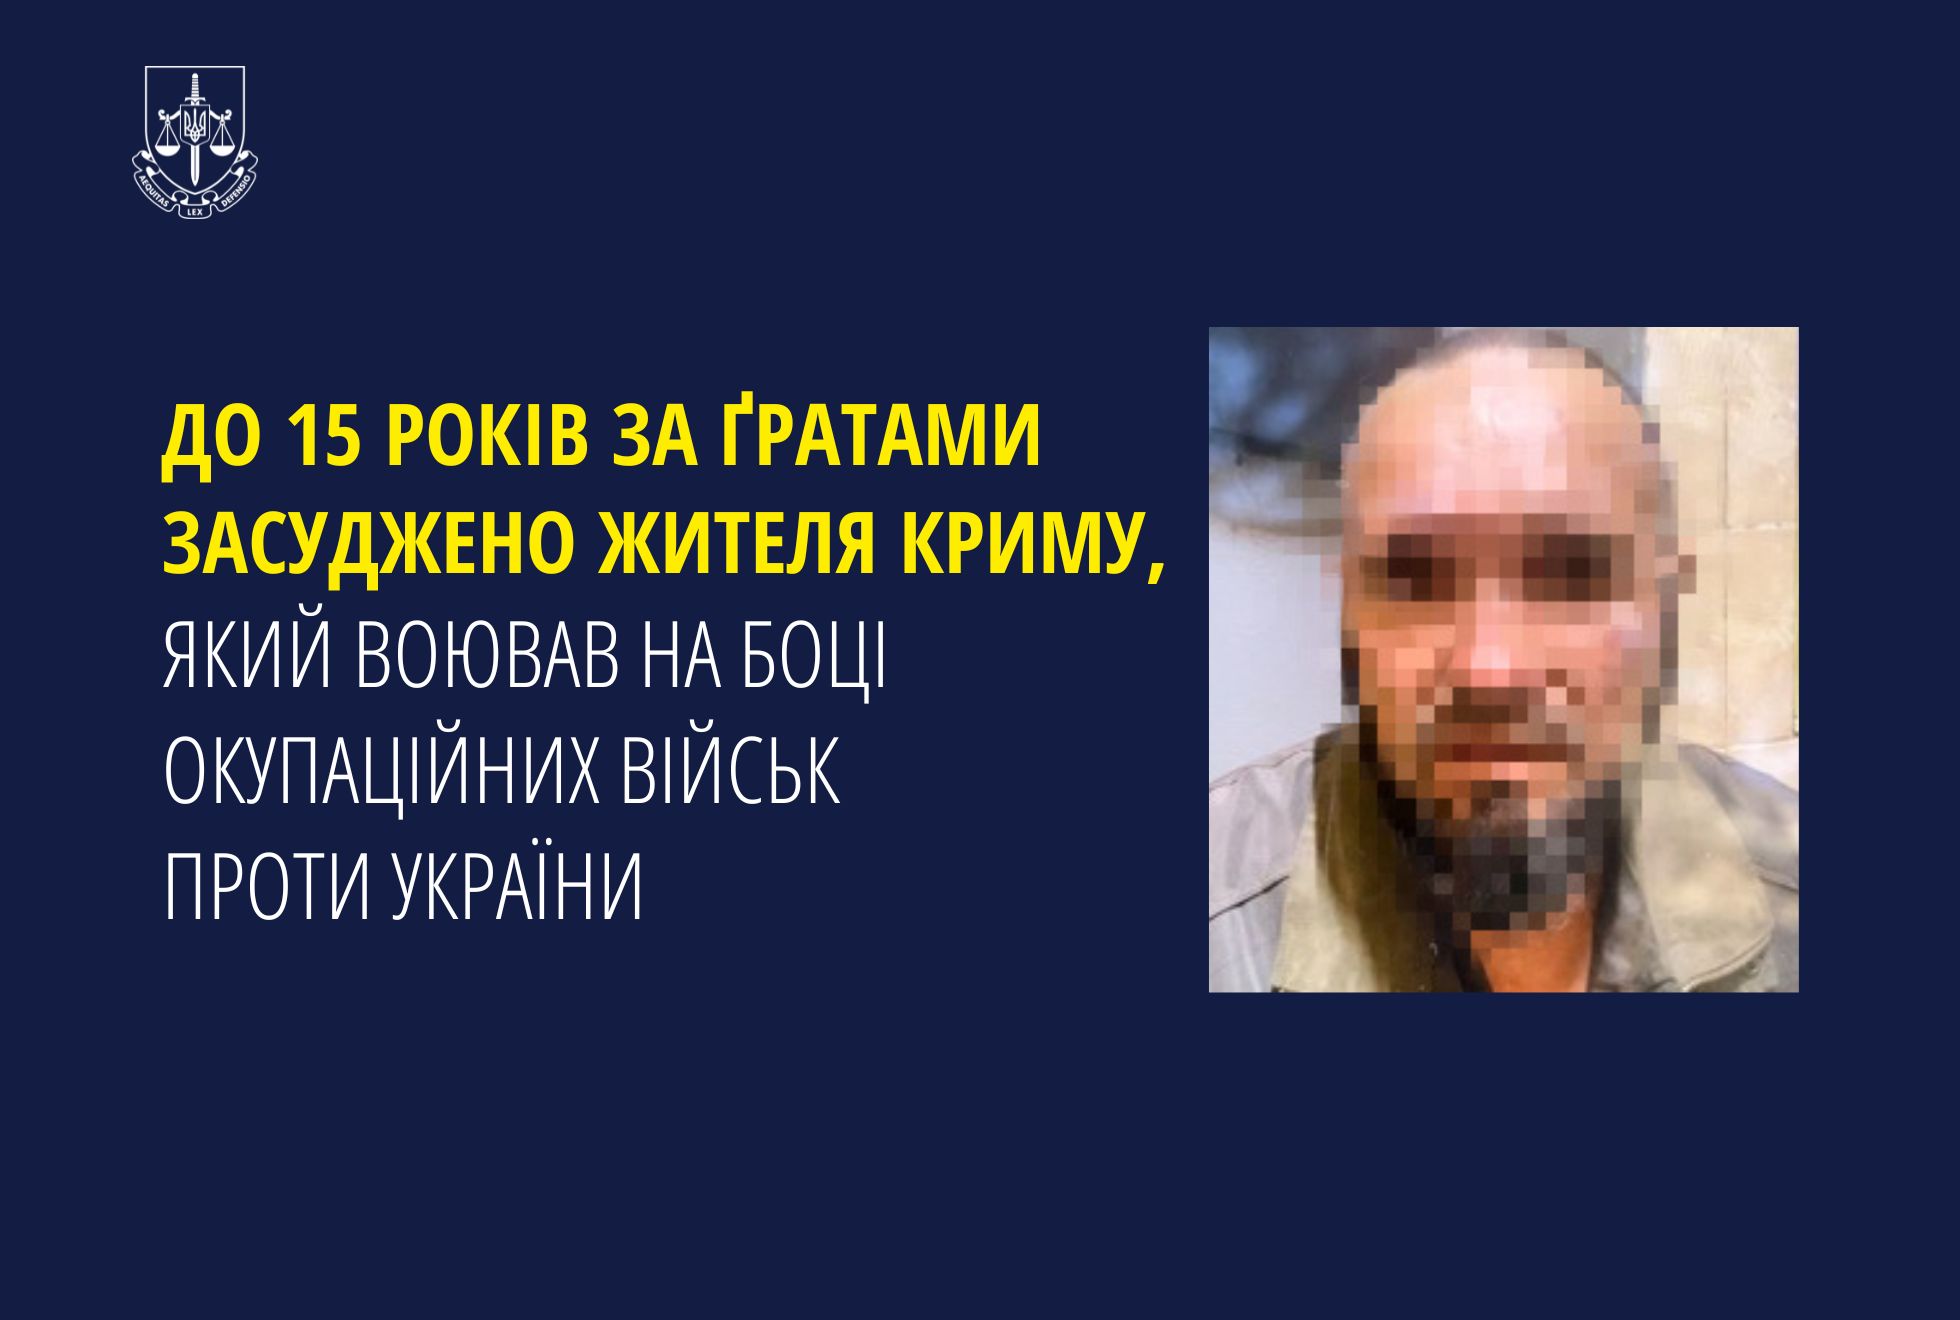 До 15 років за ґратами засуджено жителя Криму, який воював на боці окупаційних військ проти України